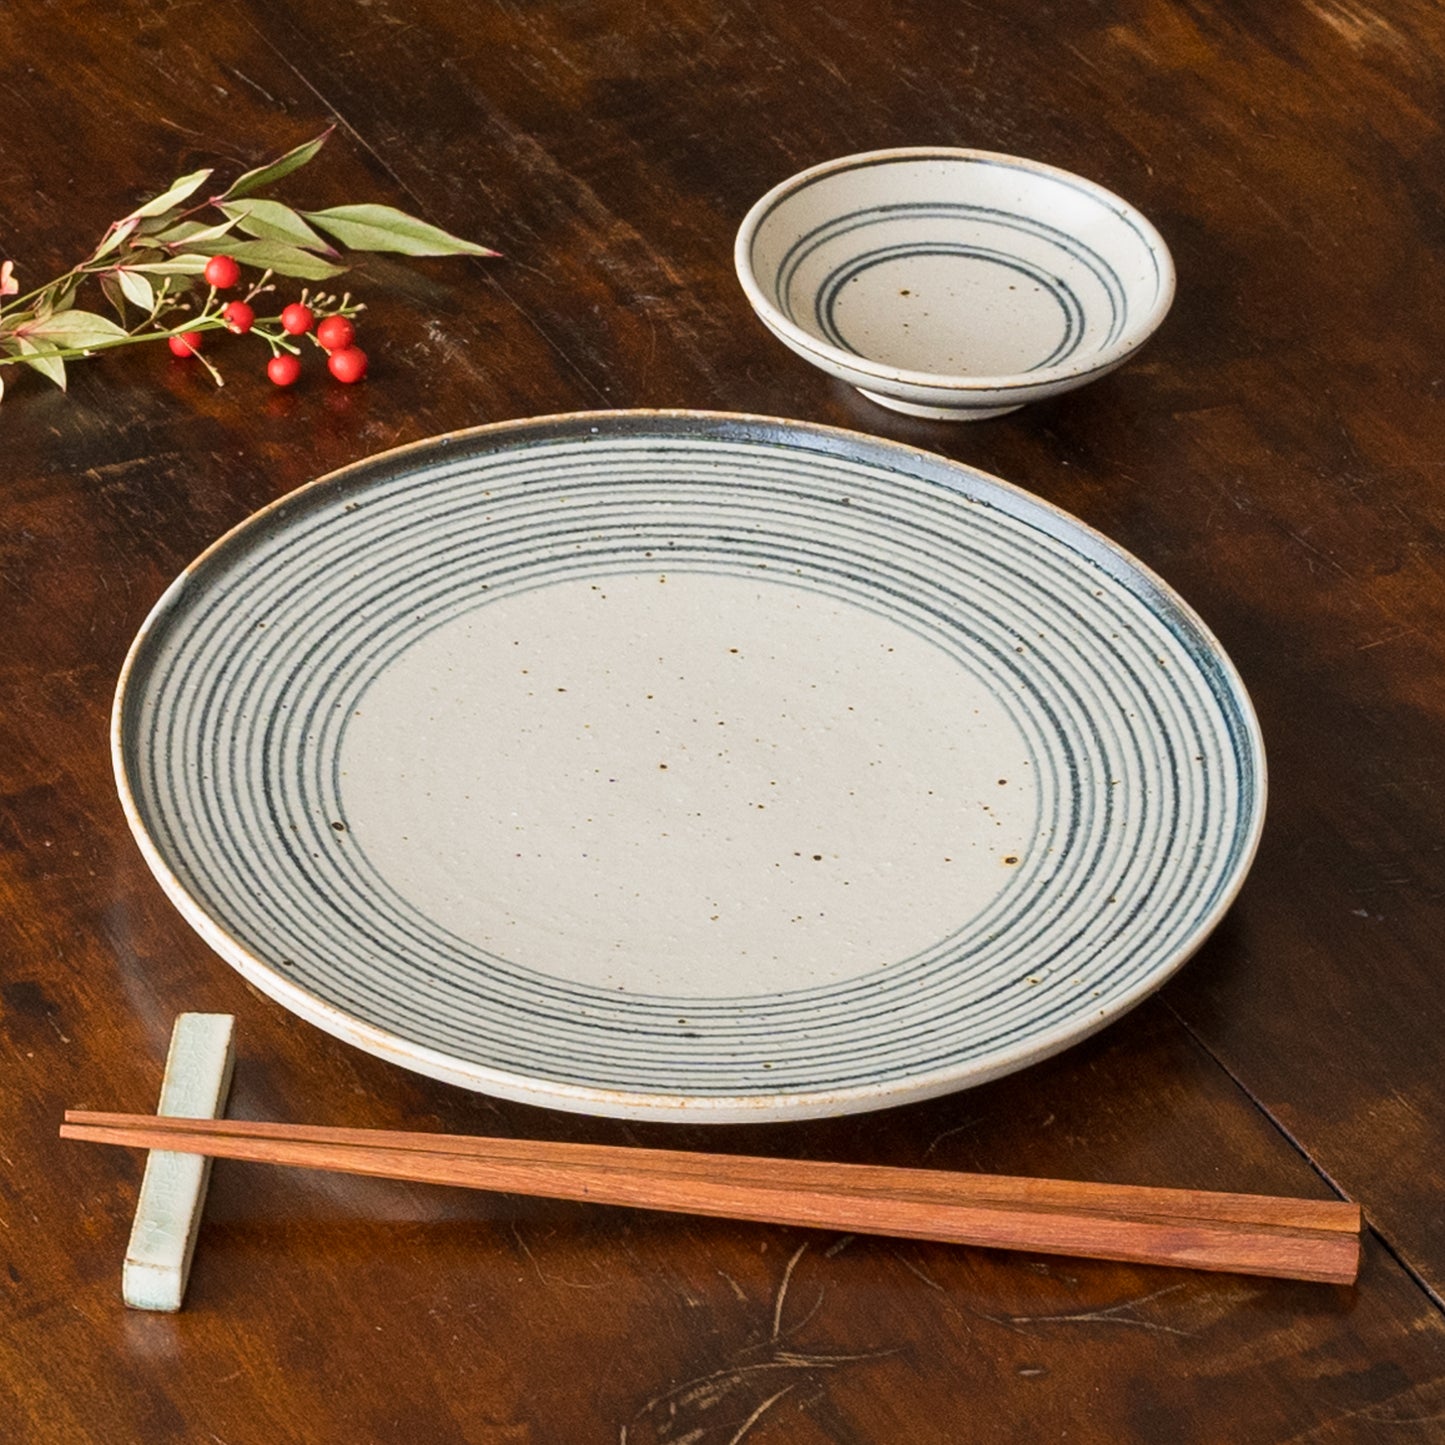 素敵な食事時間を過ごせる冨本大輔さんの灰釉染付3寸皿と灰釉染付7寸平皿